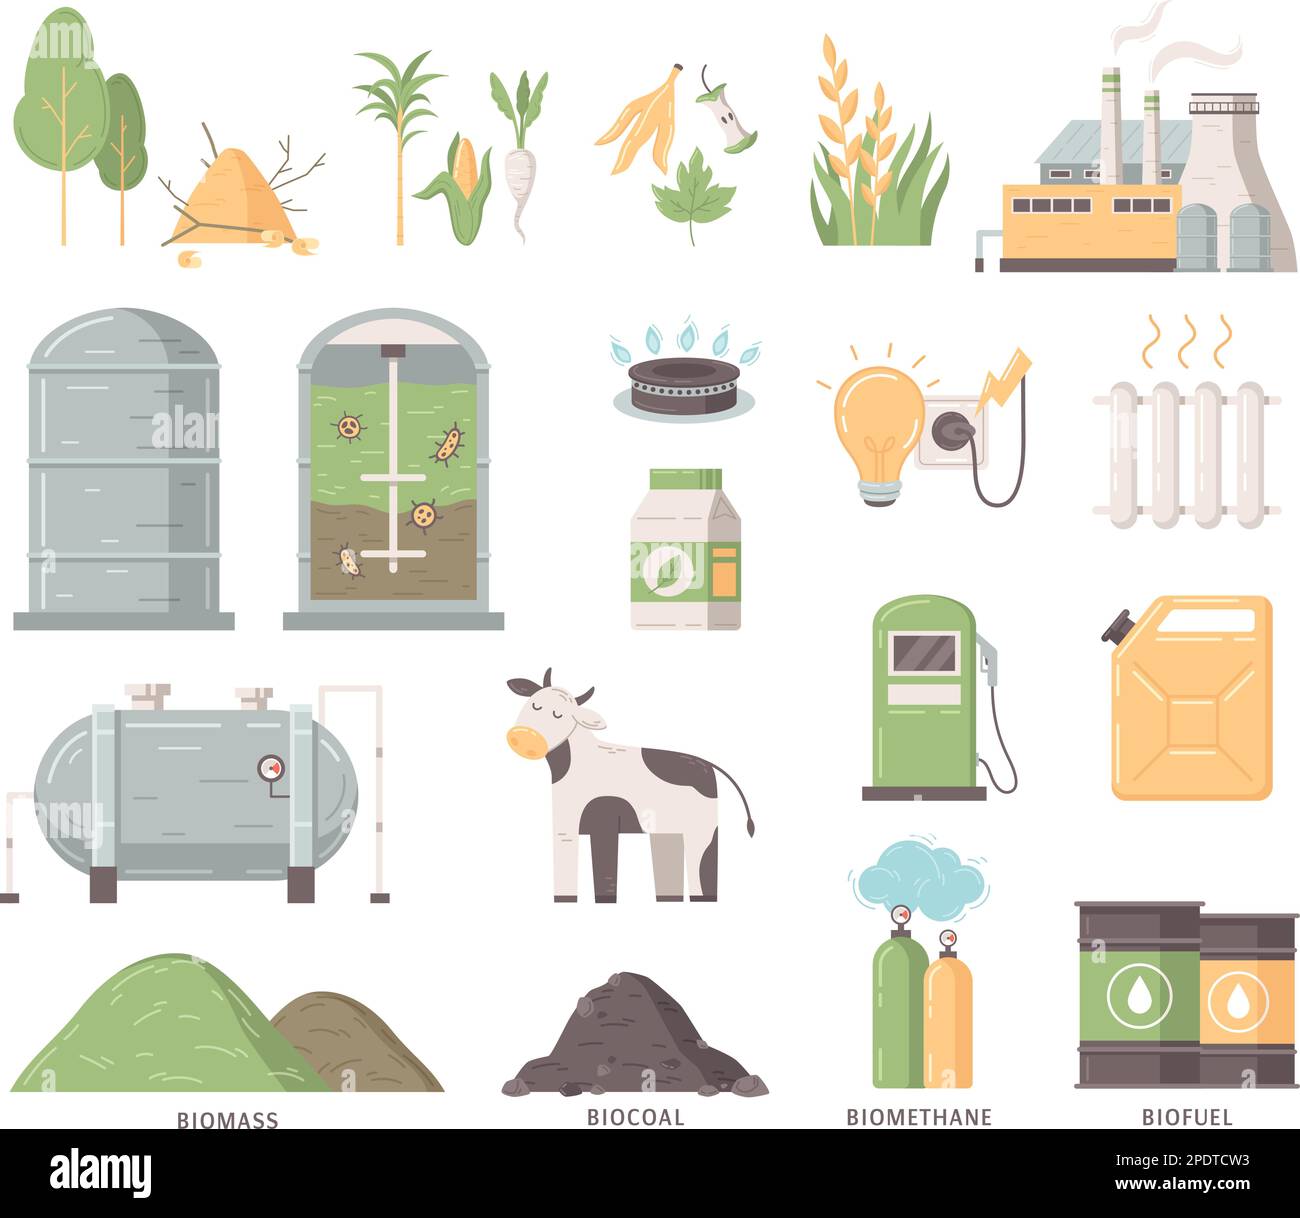 Production de biocarburants ensemble plat de déchets organiques et de sous-produits usine de traitement de la biomasse et types de biocarburant icônes isolées illustration vectorielle Illustration de Vecteur